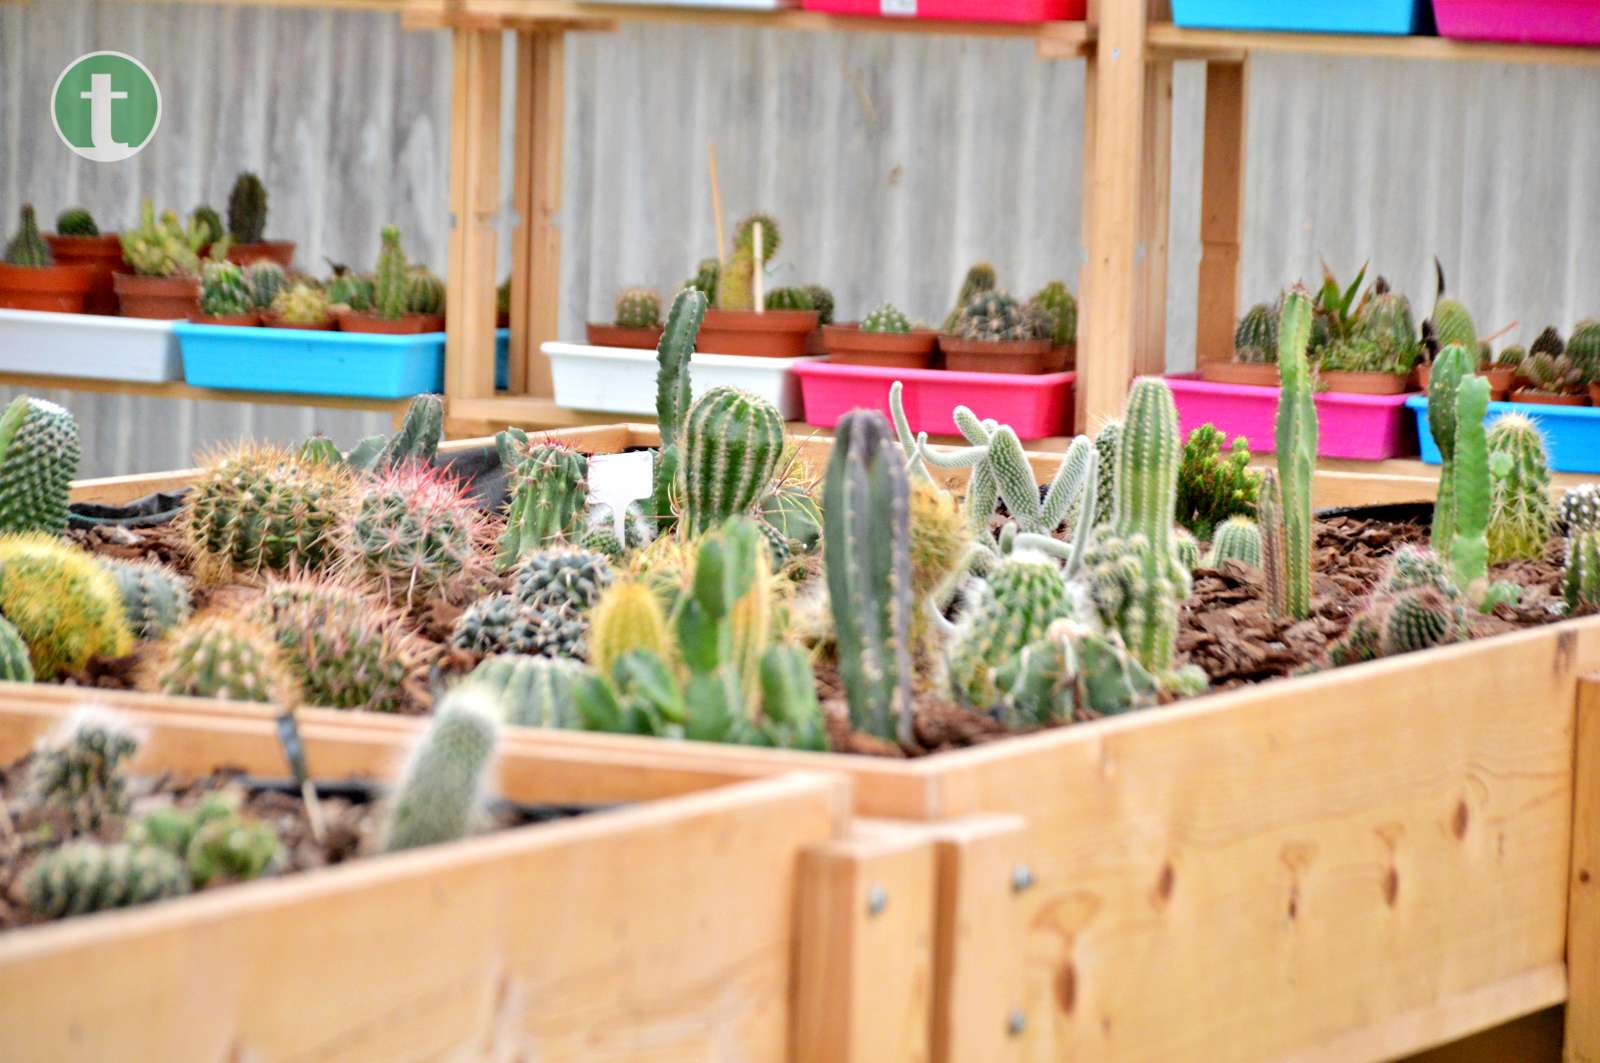 Una “familia numerosa” de cactus donados conforman una nueva exposición en AFAS Tomelloso